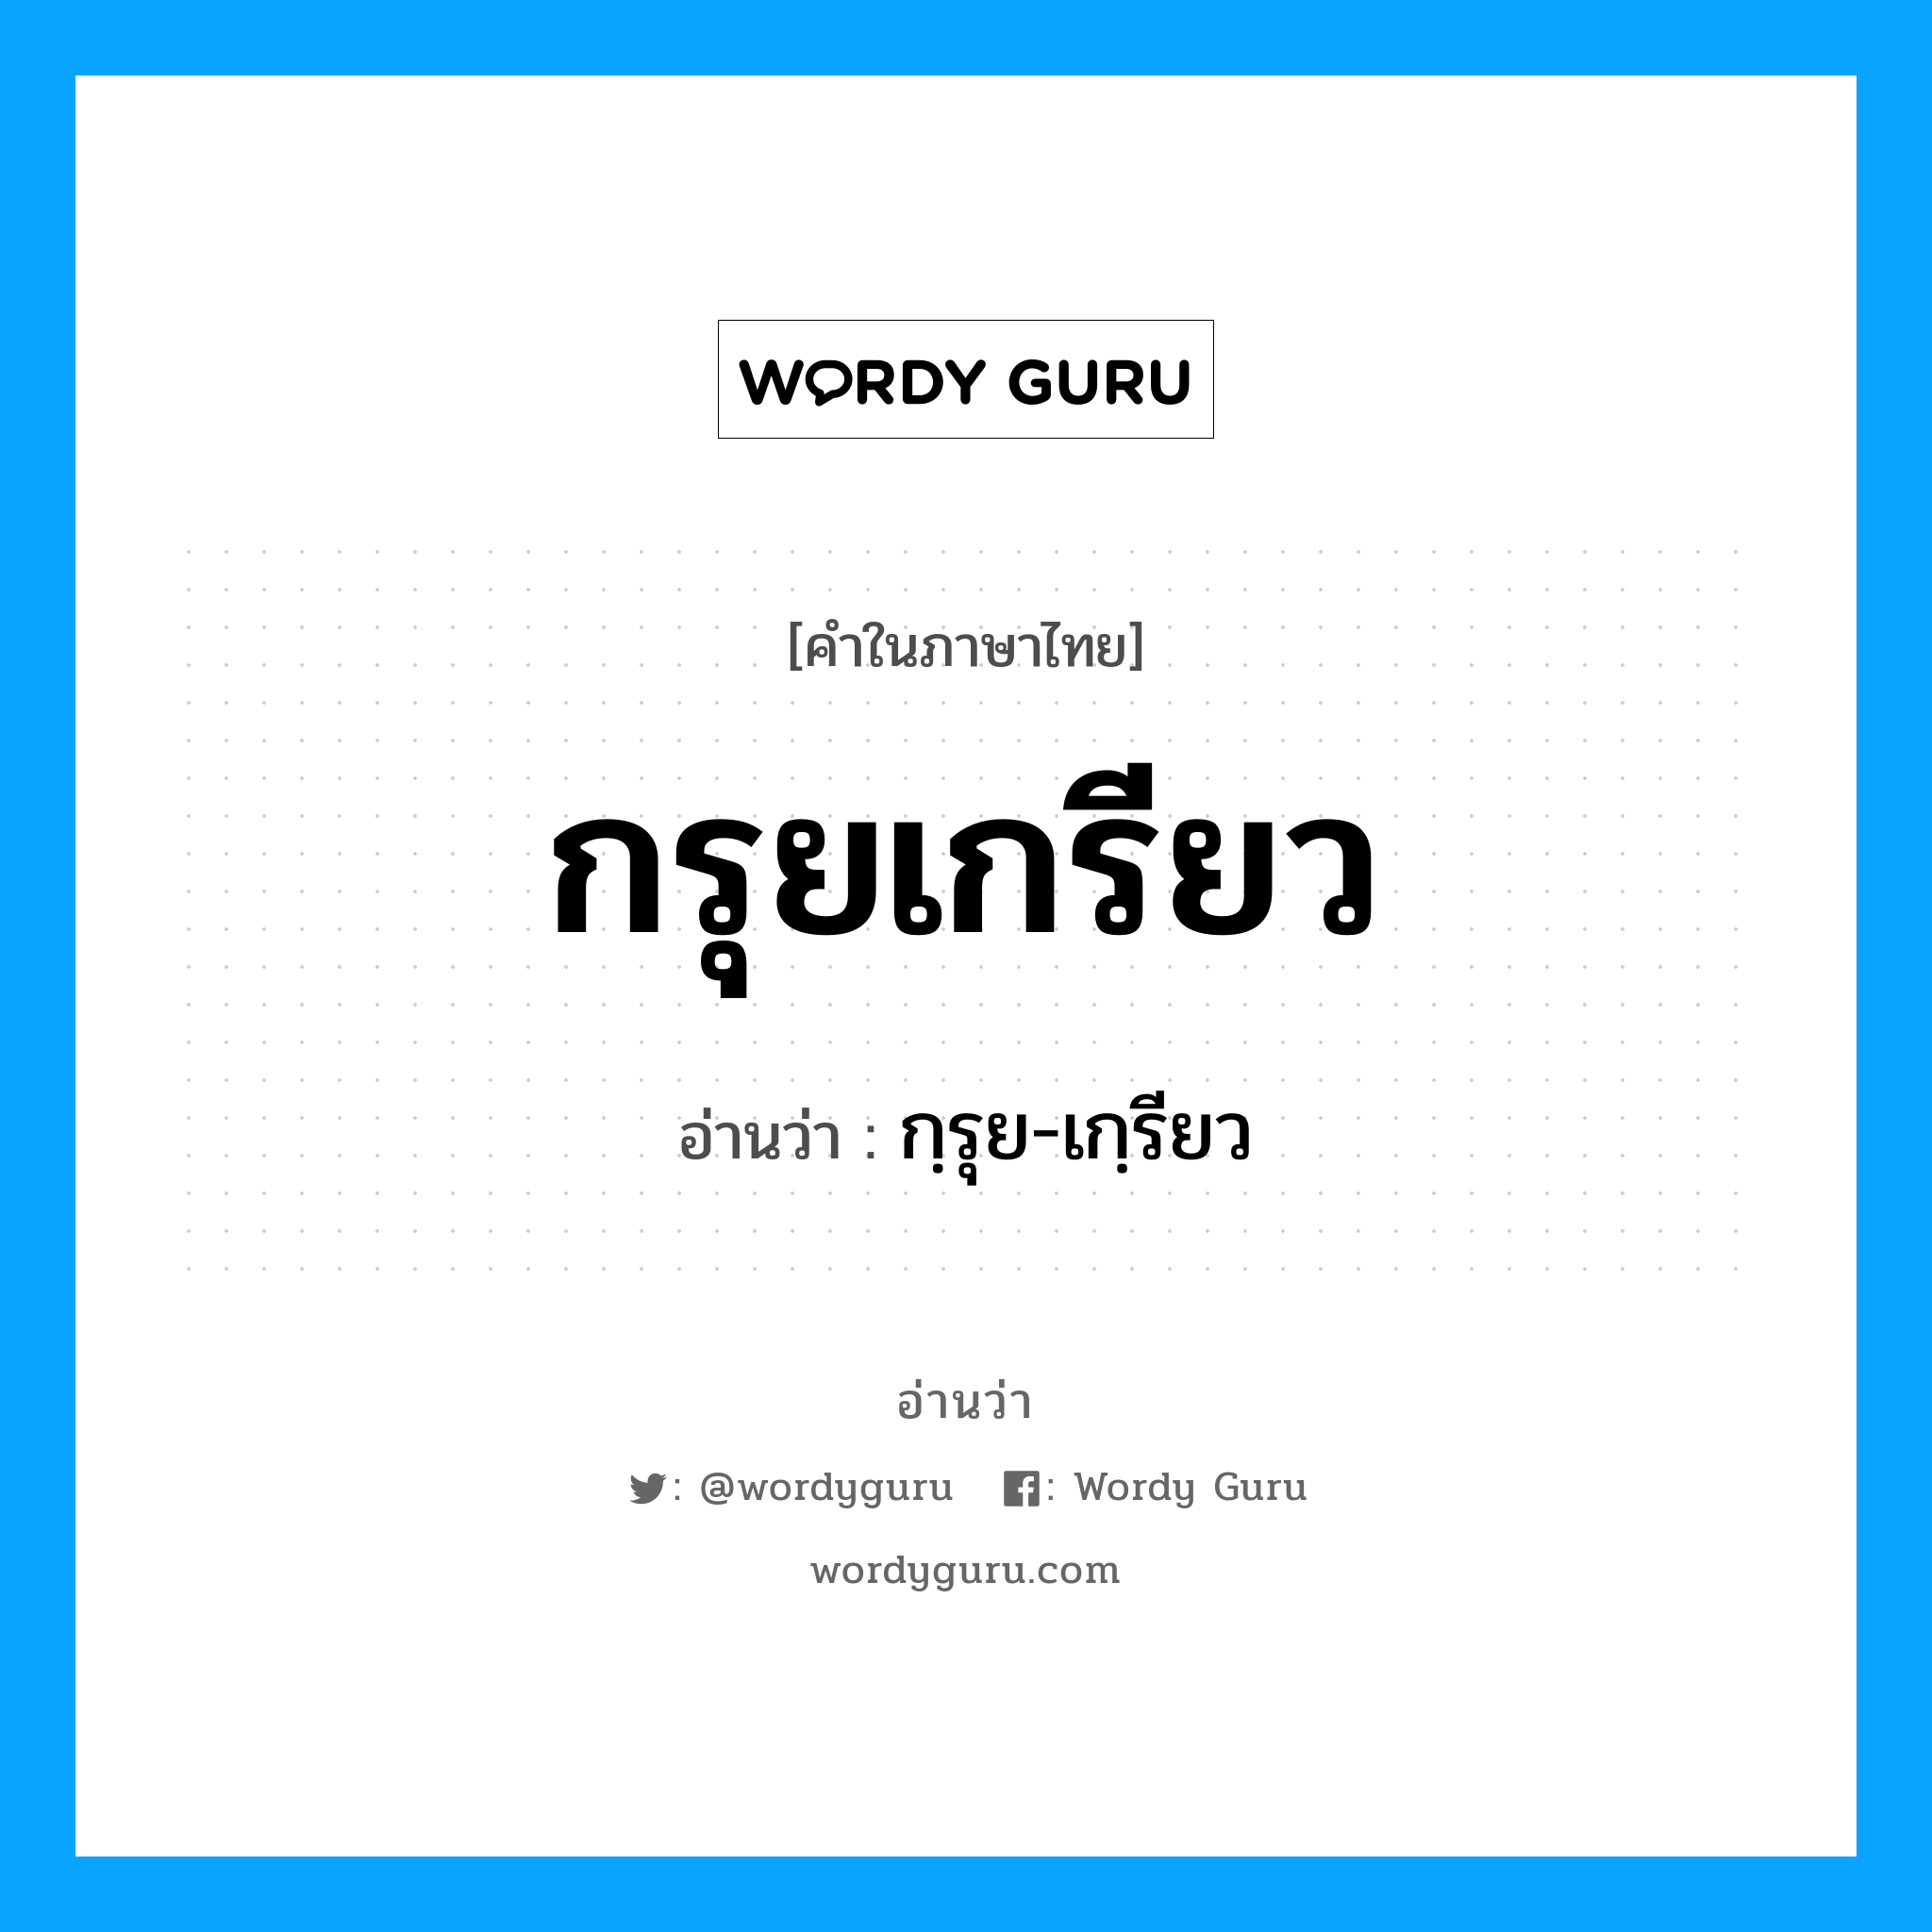 กฺรุย-เกฺรียว เป็นคำอ่านของคำไหน?, คำในภาษาไทย กฺรุย-เกฺรียว อ่านว่า กรุยเกรียว